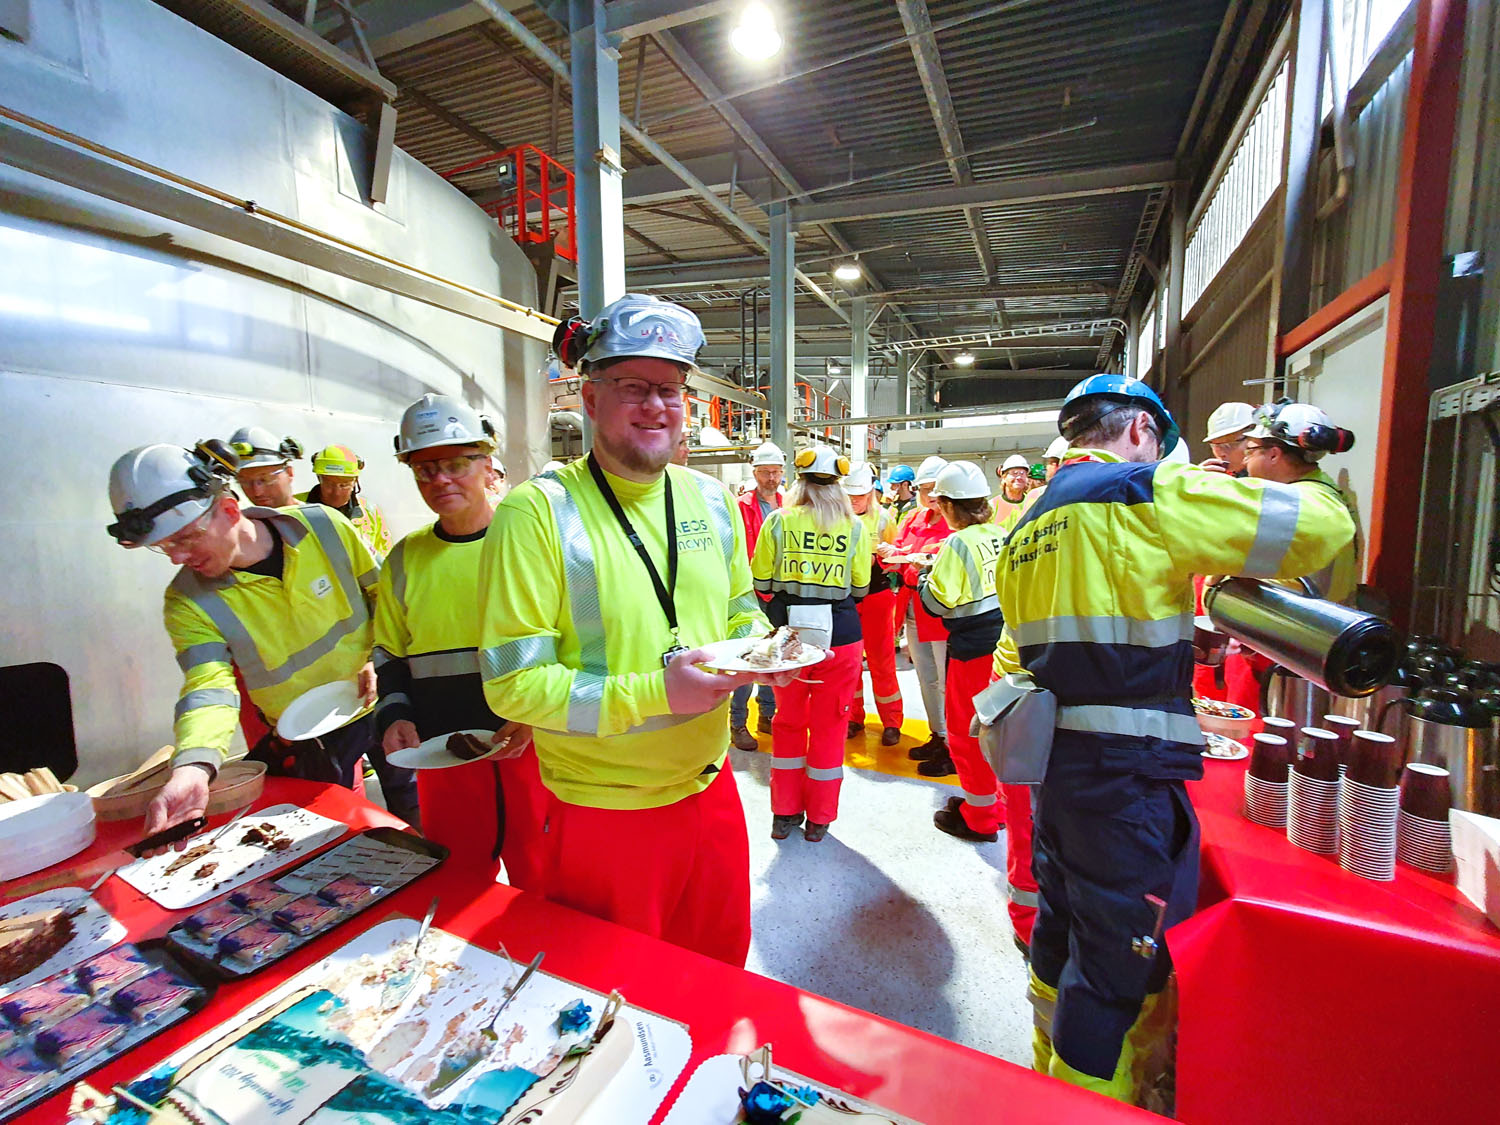 Kollegaer står i rekke for å forsyne seg med kake, markering, arbeidsantrekk røde bukser og gule gensere, hvite hjelmer, arrangement foregår i fabrikkhall.